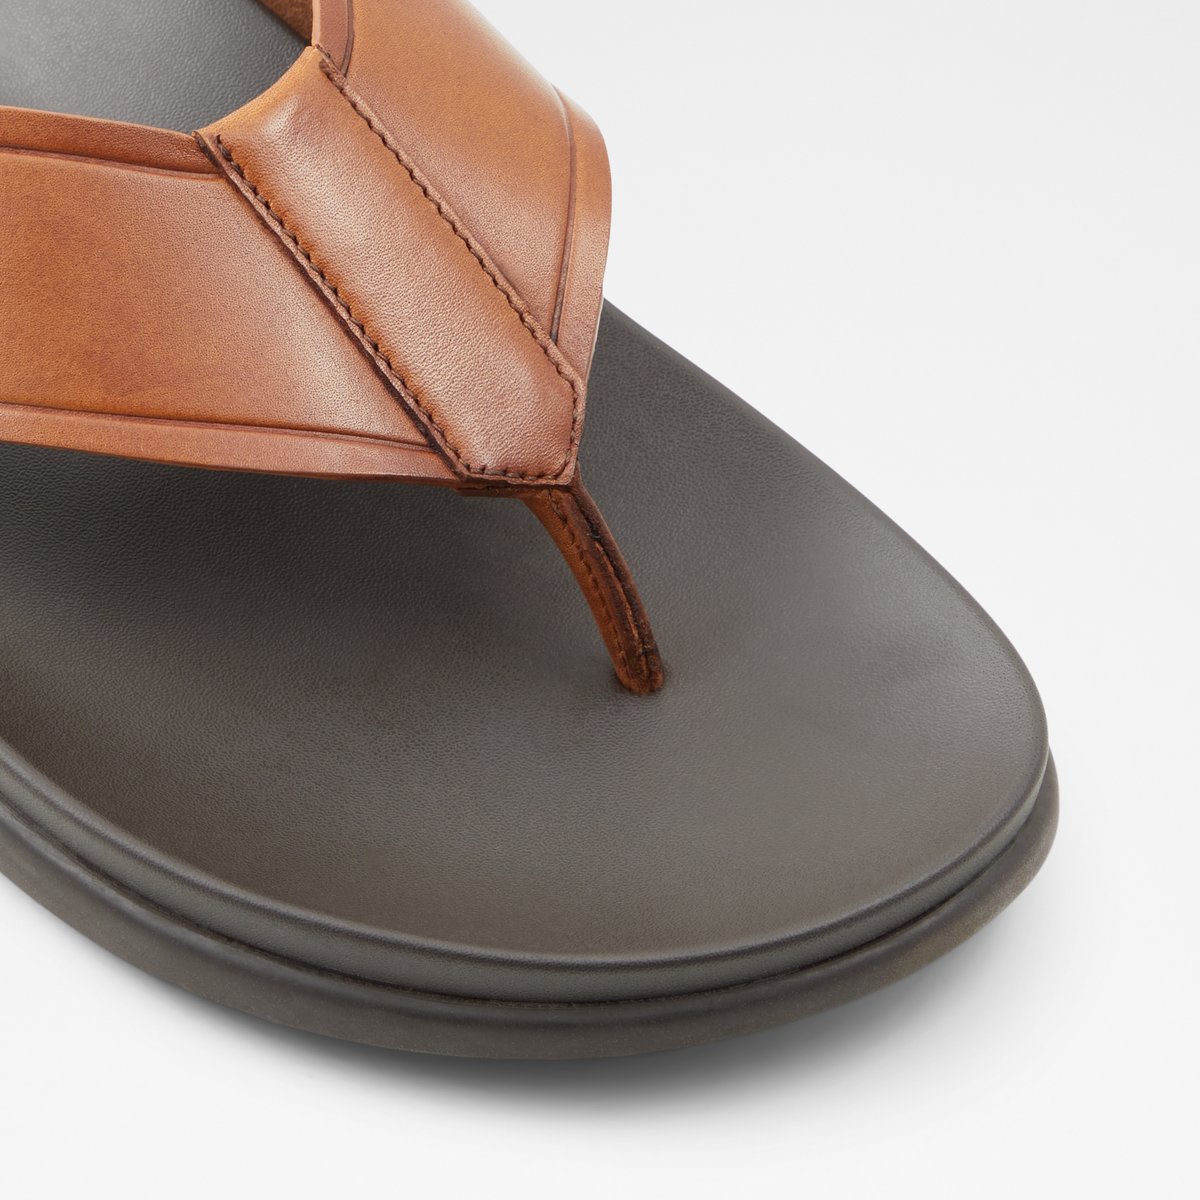 Men's Leather Flip Flops in Brown